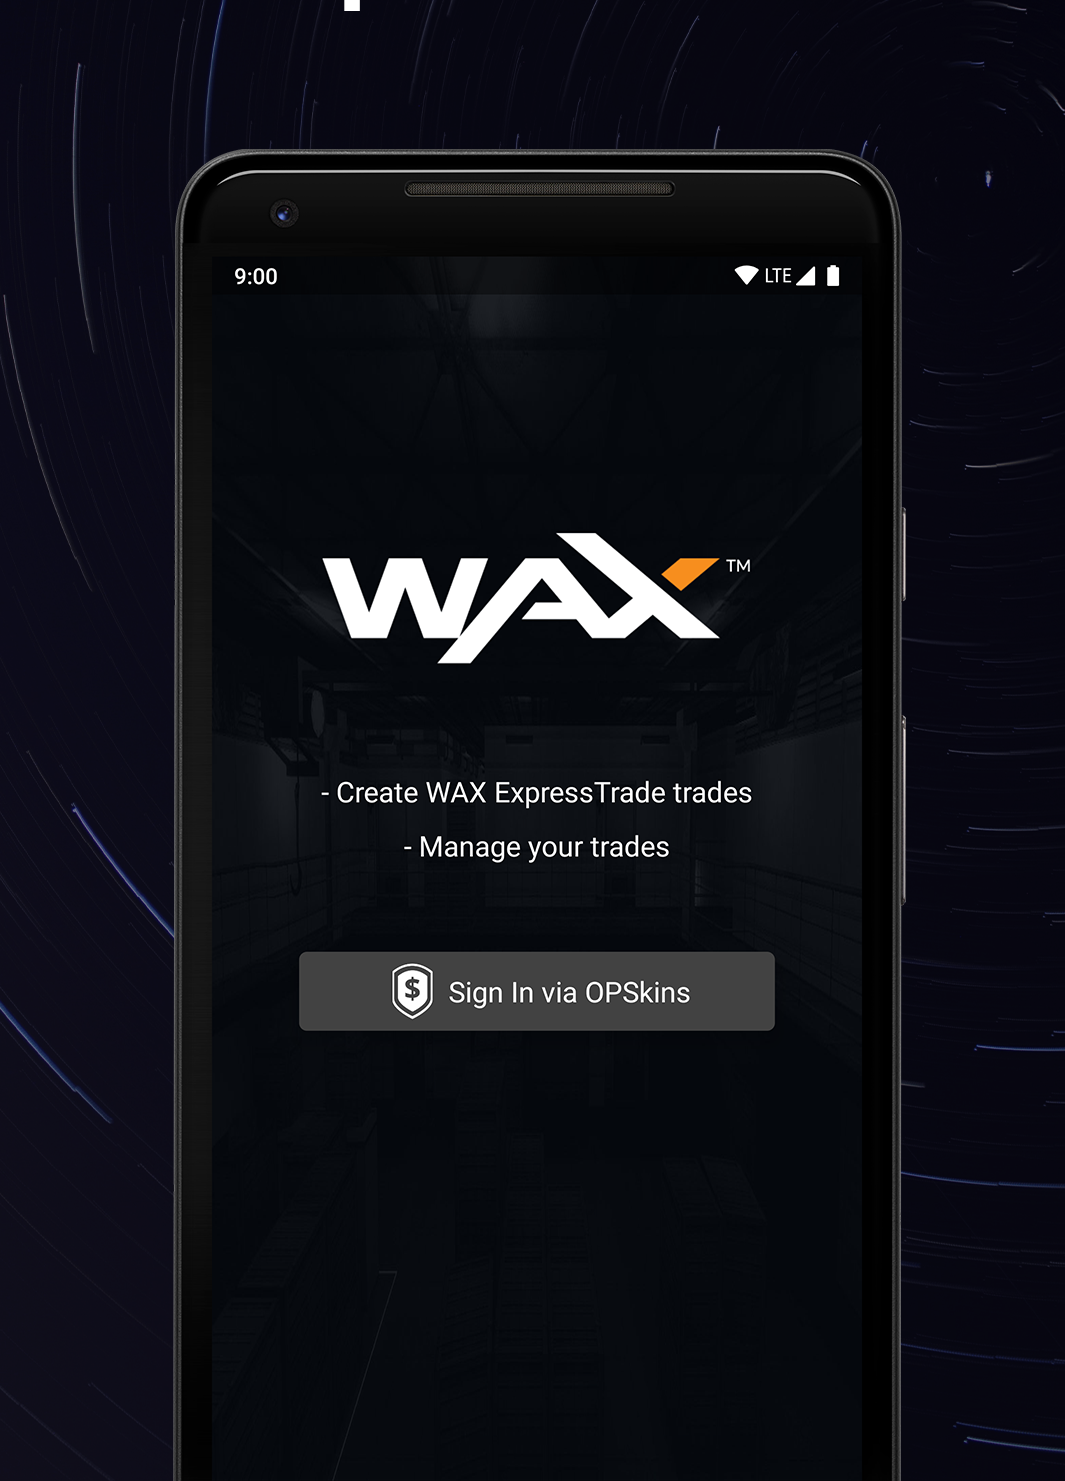 WAX ExpressTrade App